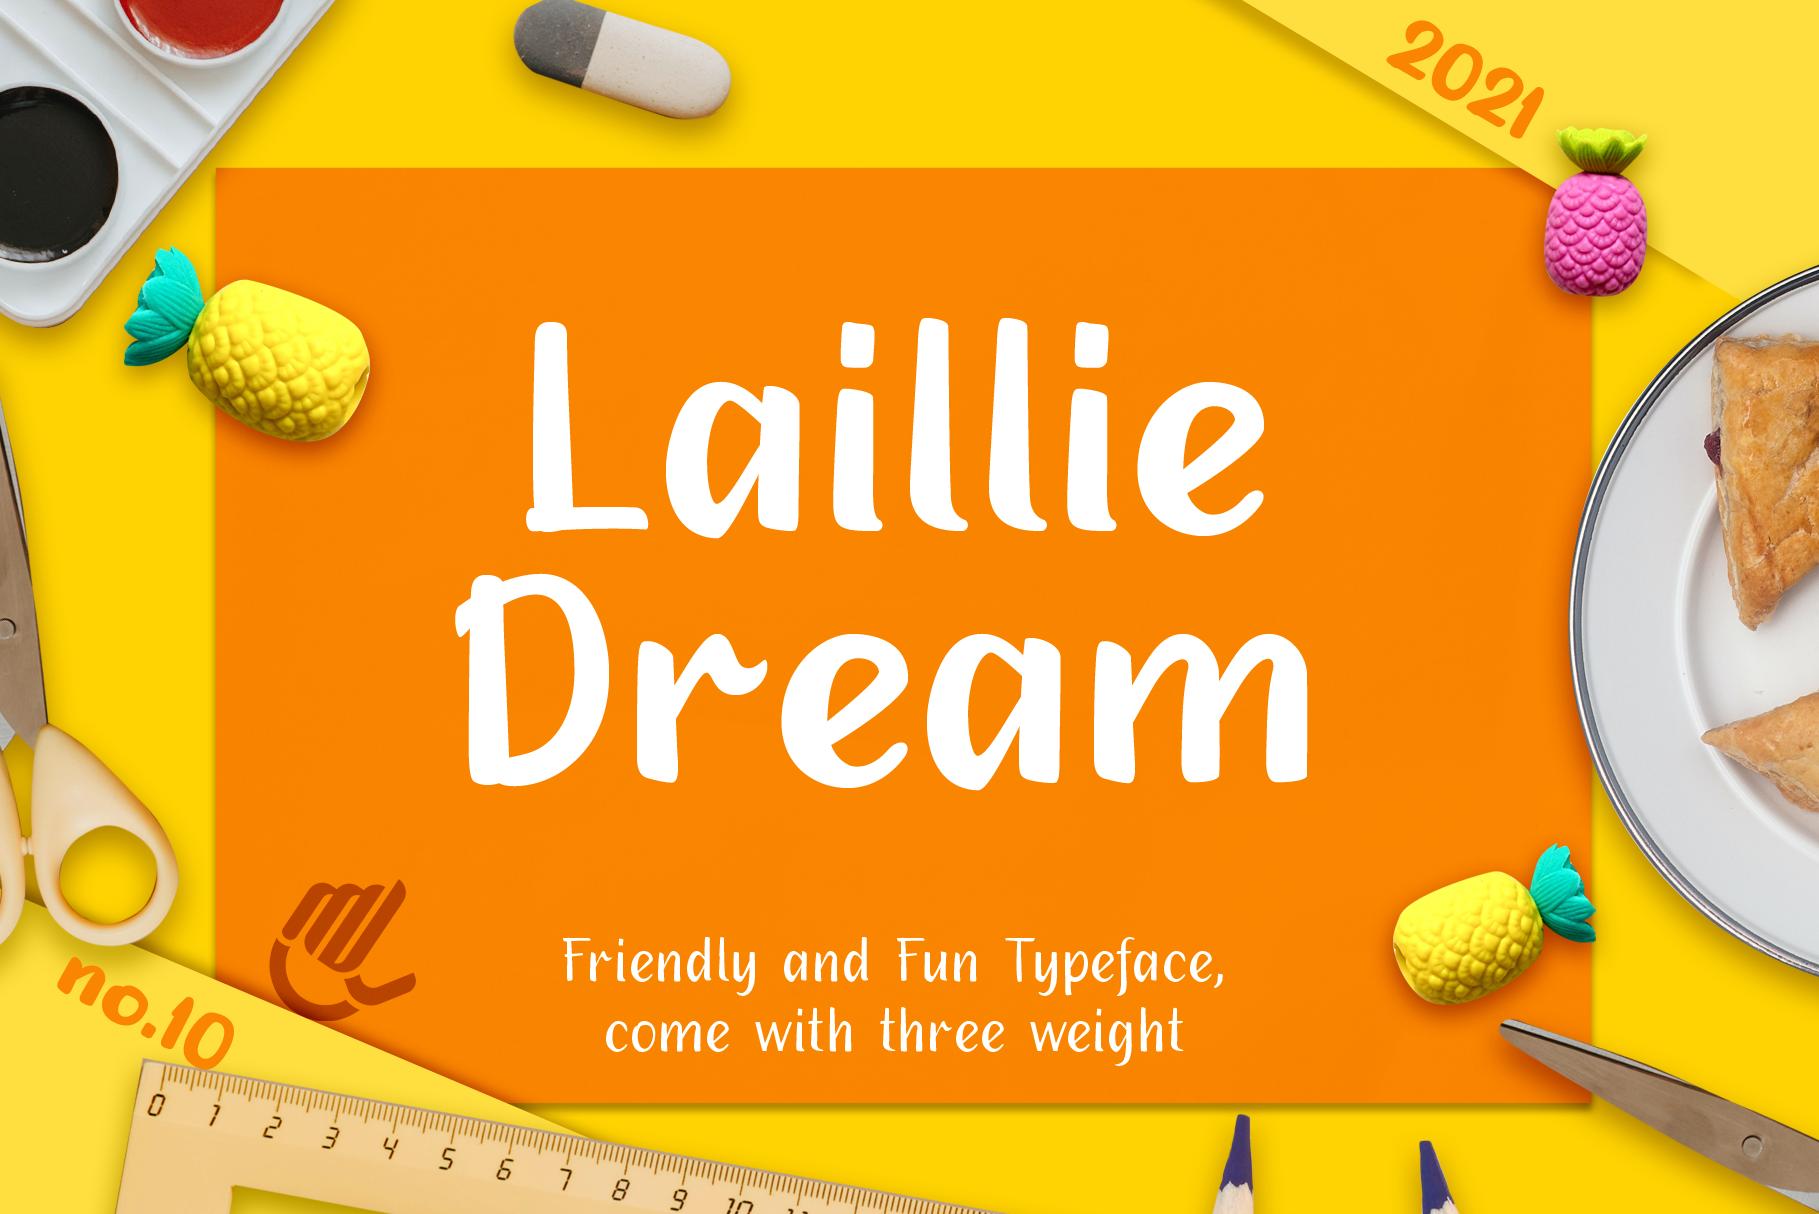 Laillie Dream Font